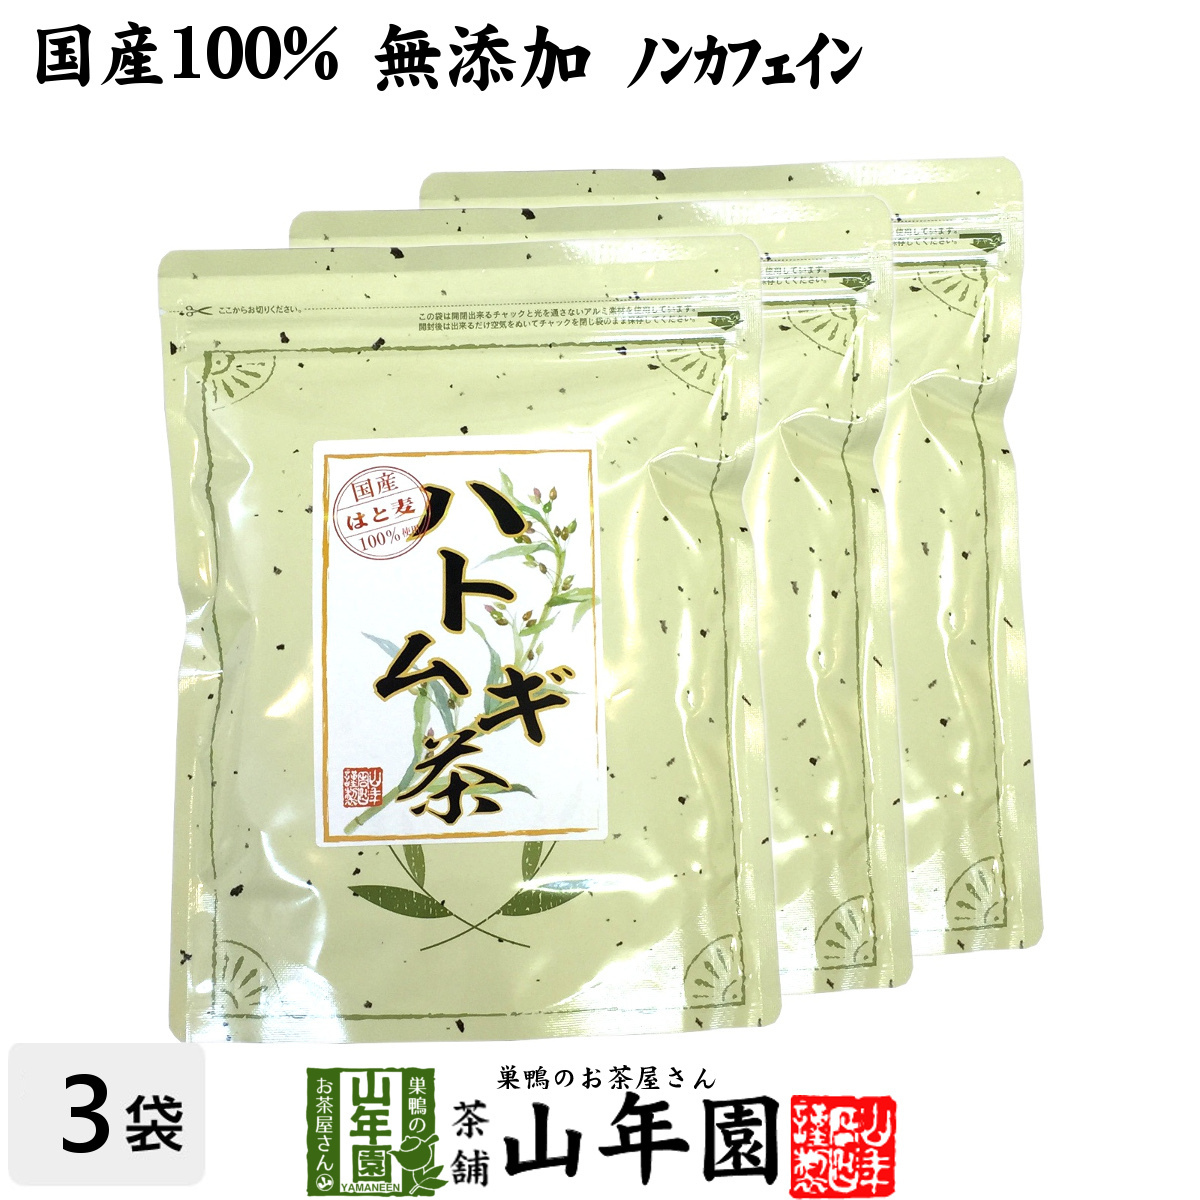 健康茶 ハトムギ茶 7g×24パック×3袋セット ティーパック 国産 鳥取県産はと麦茶 はとむぎノンカフェインティーバッグ 送料無料_画像1